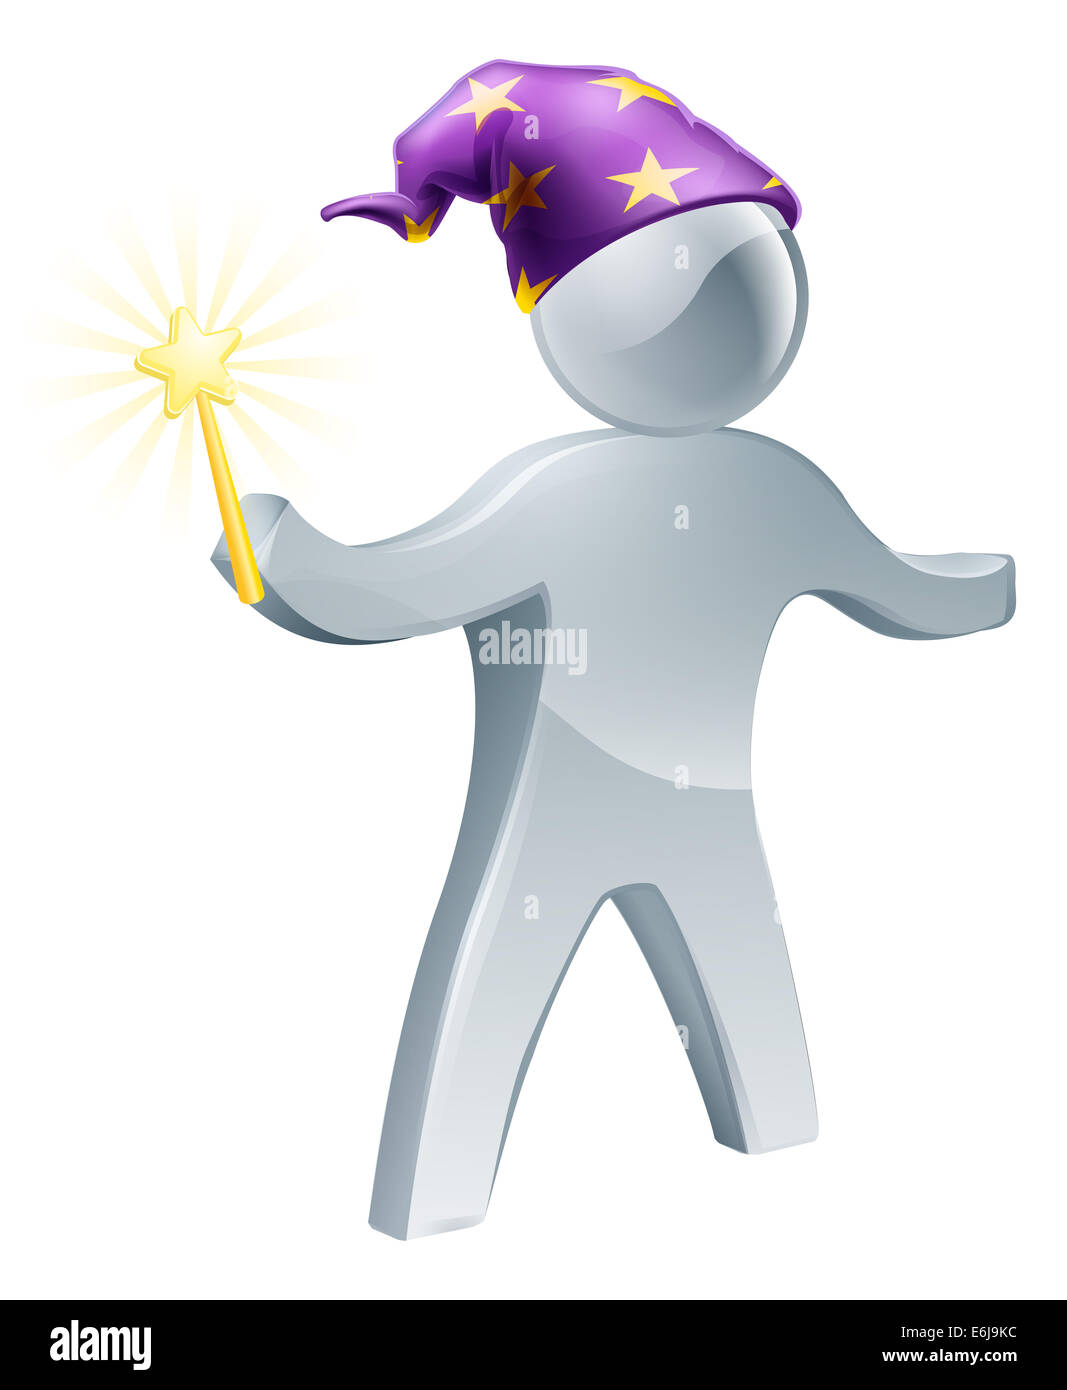 Una illustrazione della procedura guidata di una persona in possesso di una bacchetta e indossando un cappello viola con le stelle Foto Stock